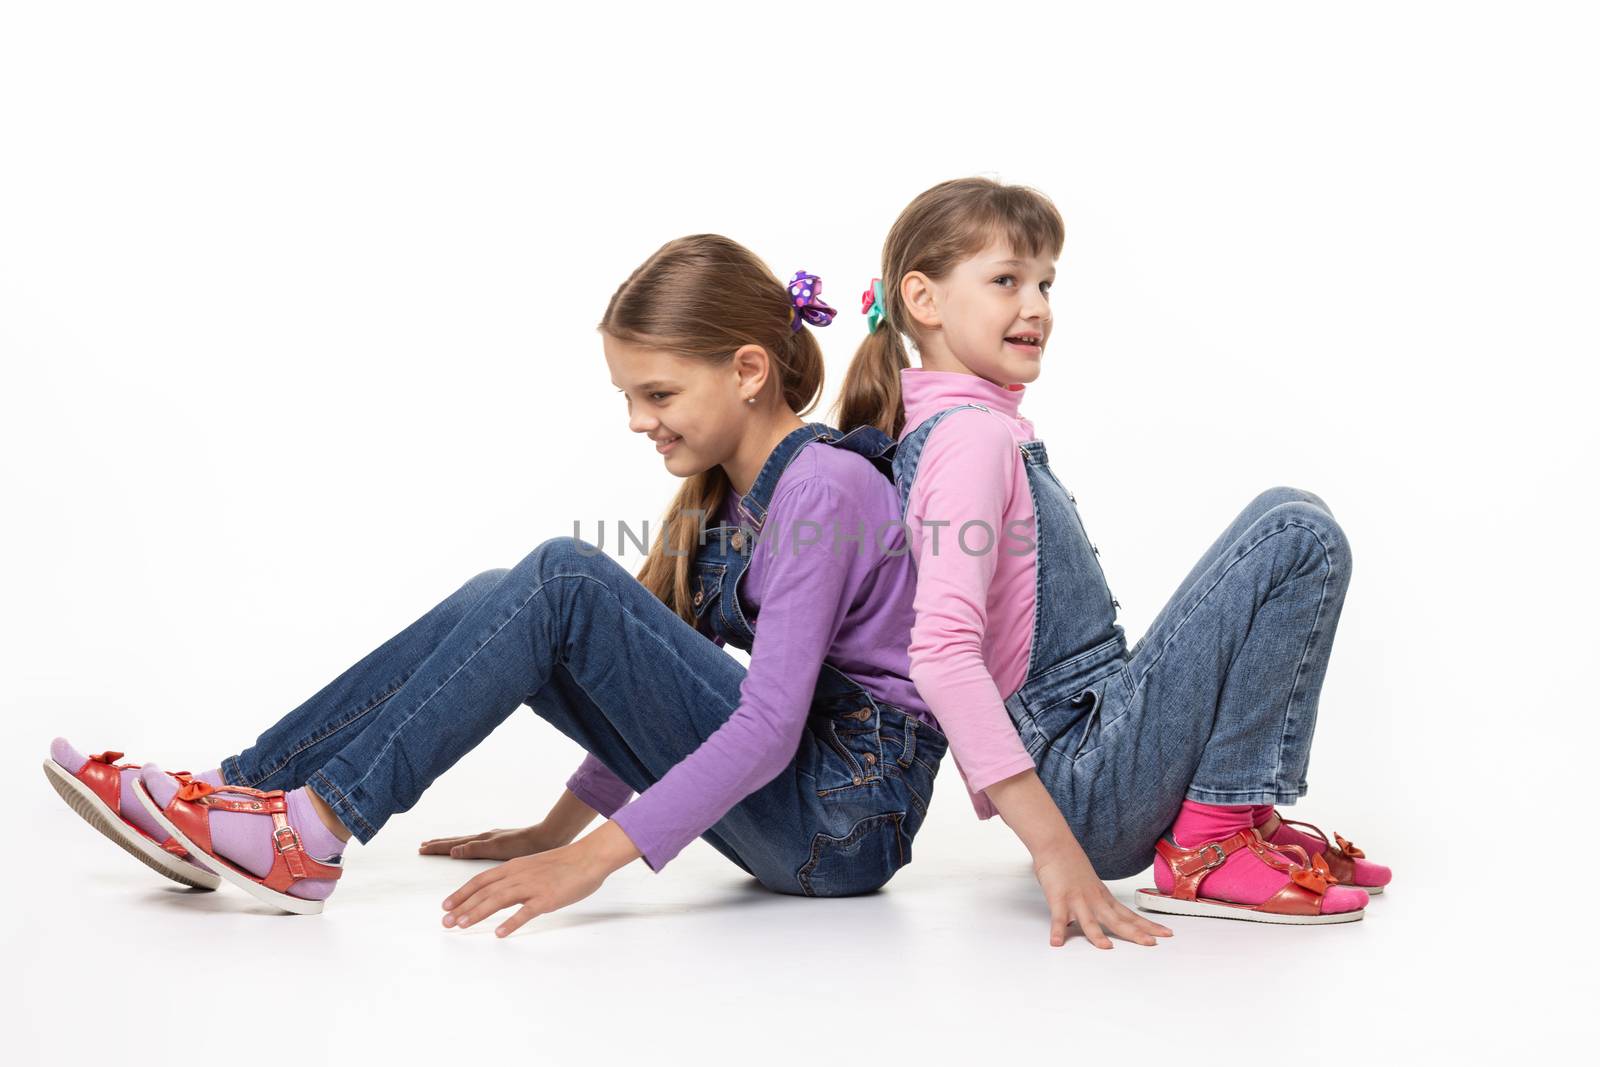 Children sitting on the floor pushing their backs